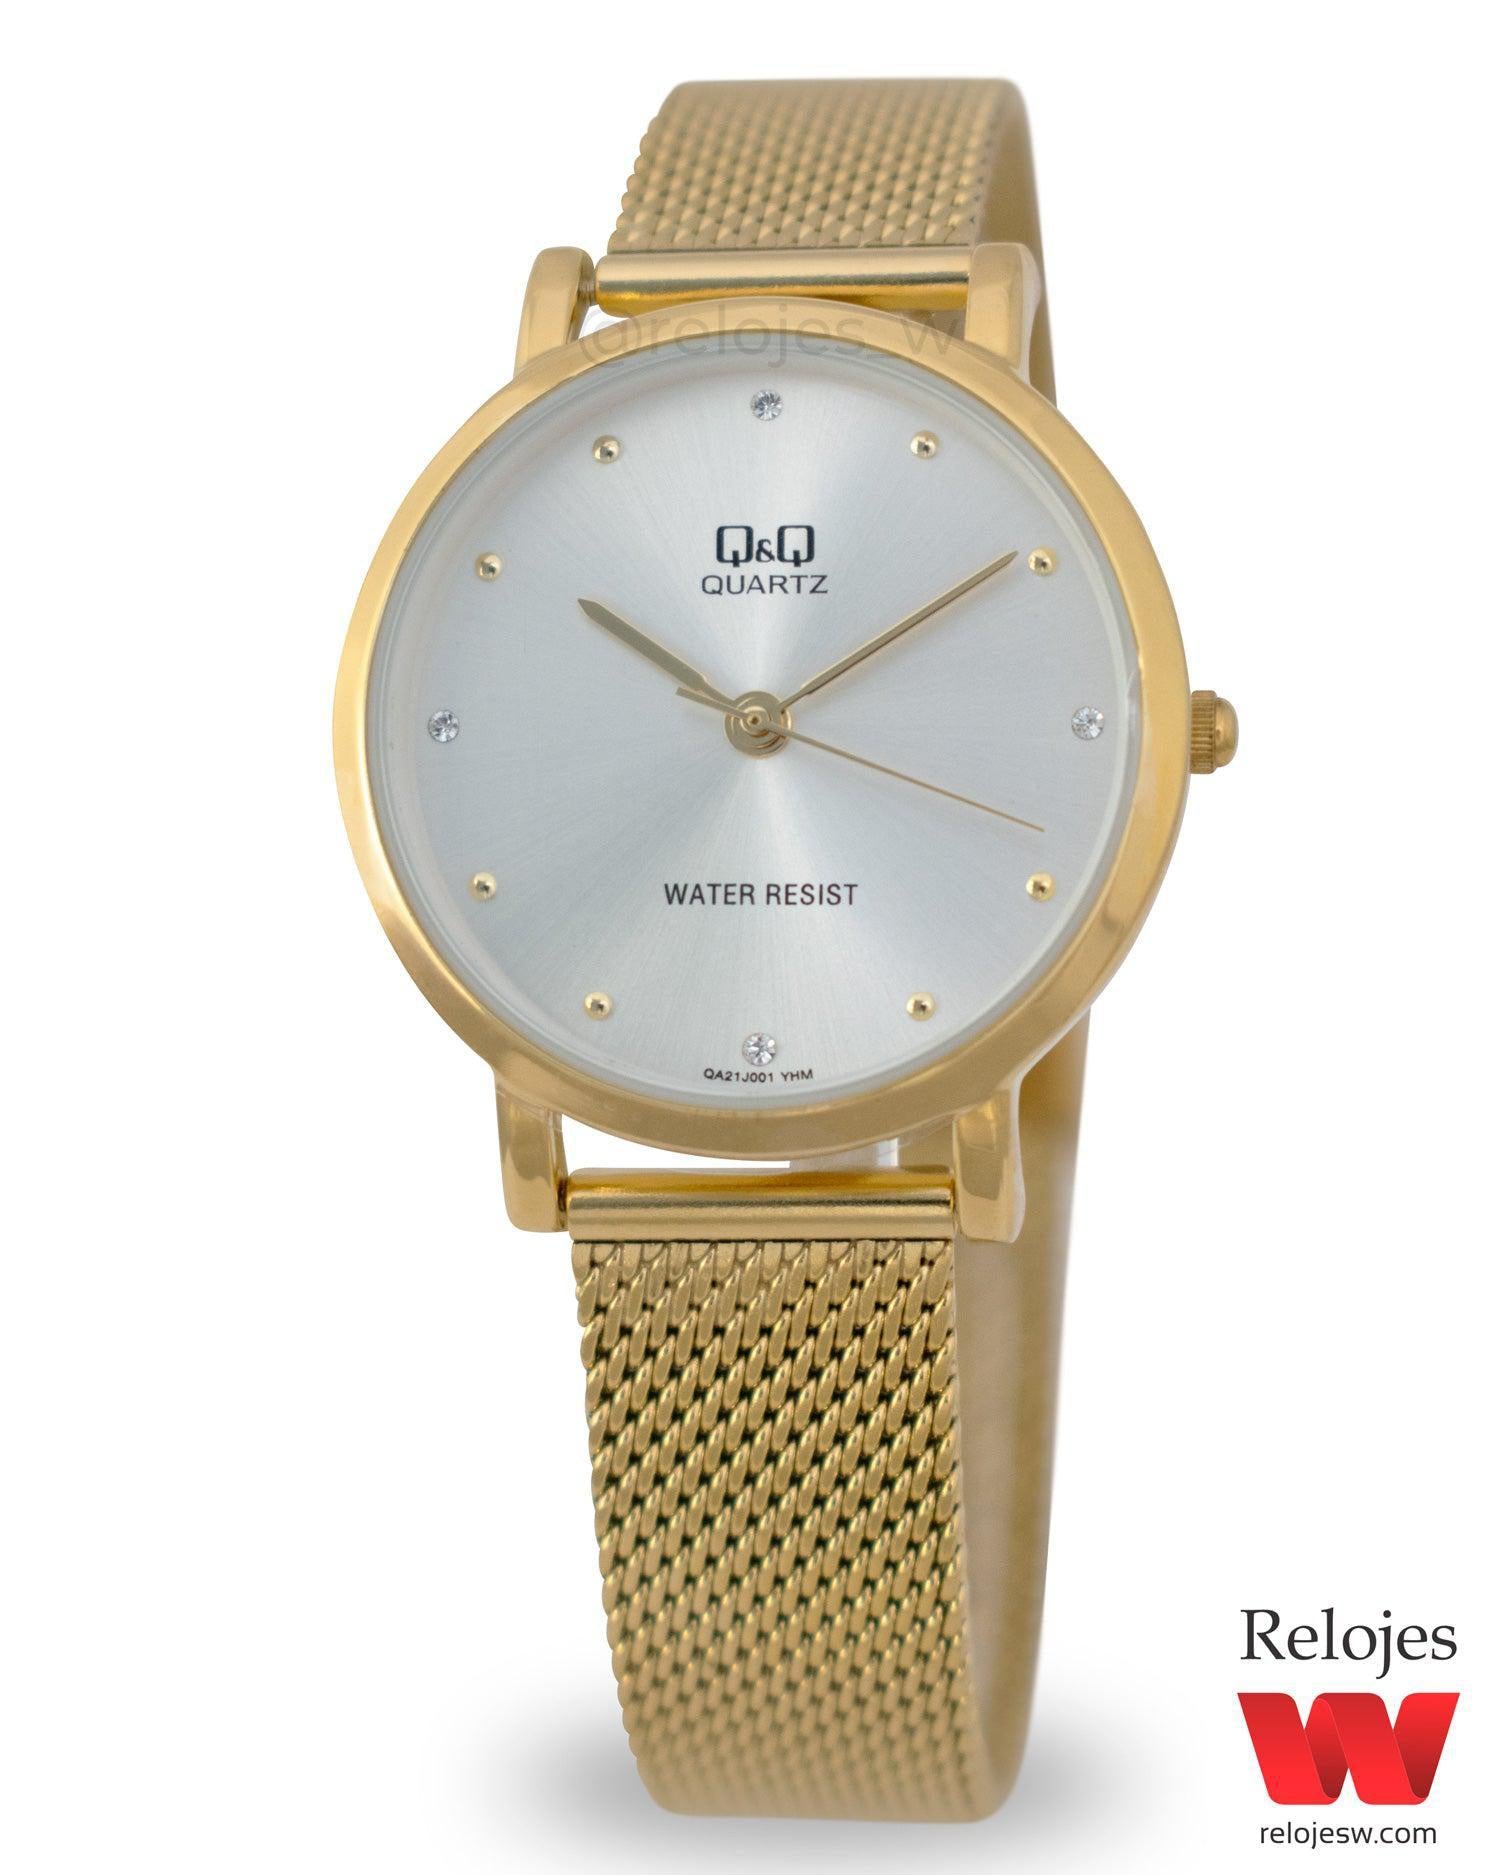 Reloj Q&Q Mujer Dorado QA21J001Y – Relojes W